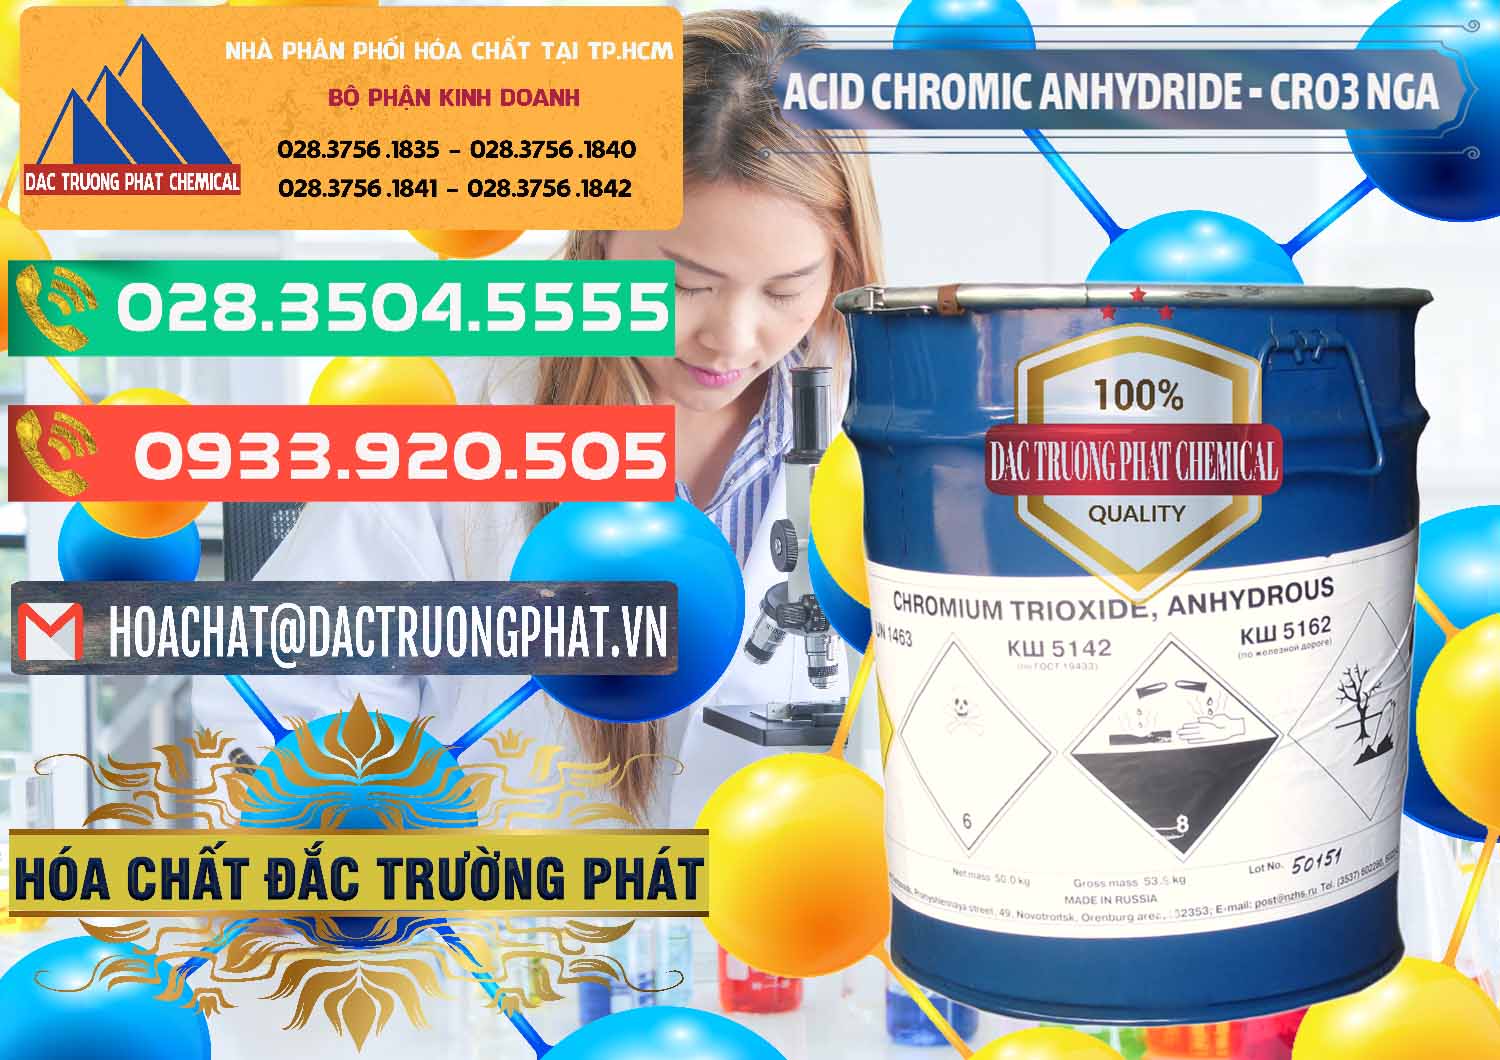 Cty chuyên kinh doanh - bán Acid Chromic Anhydride - Cromic CRO3 Nga Russia - 0006 - Công ty phân phối ( nhập khẩu ) hóa chất tại TP.HCM - congtyhoachat.com.vn